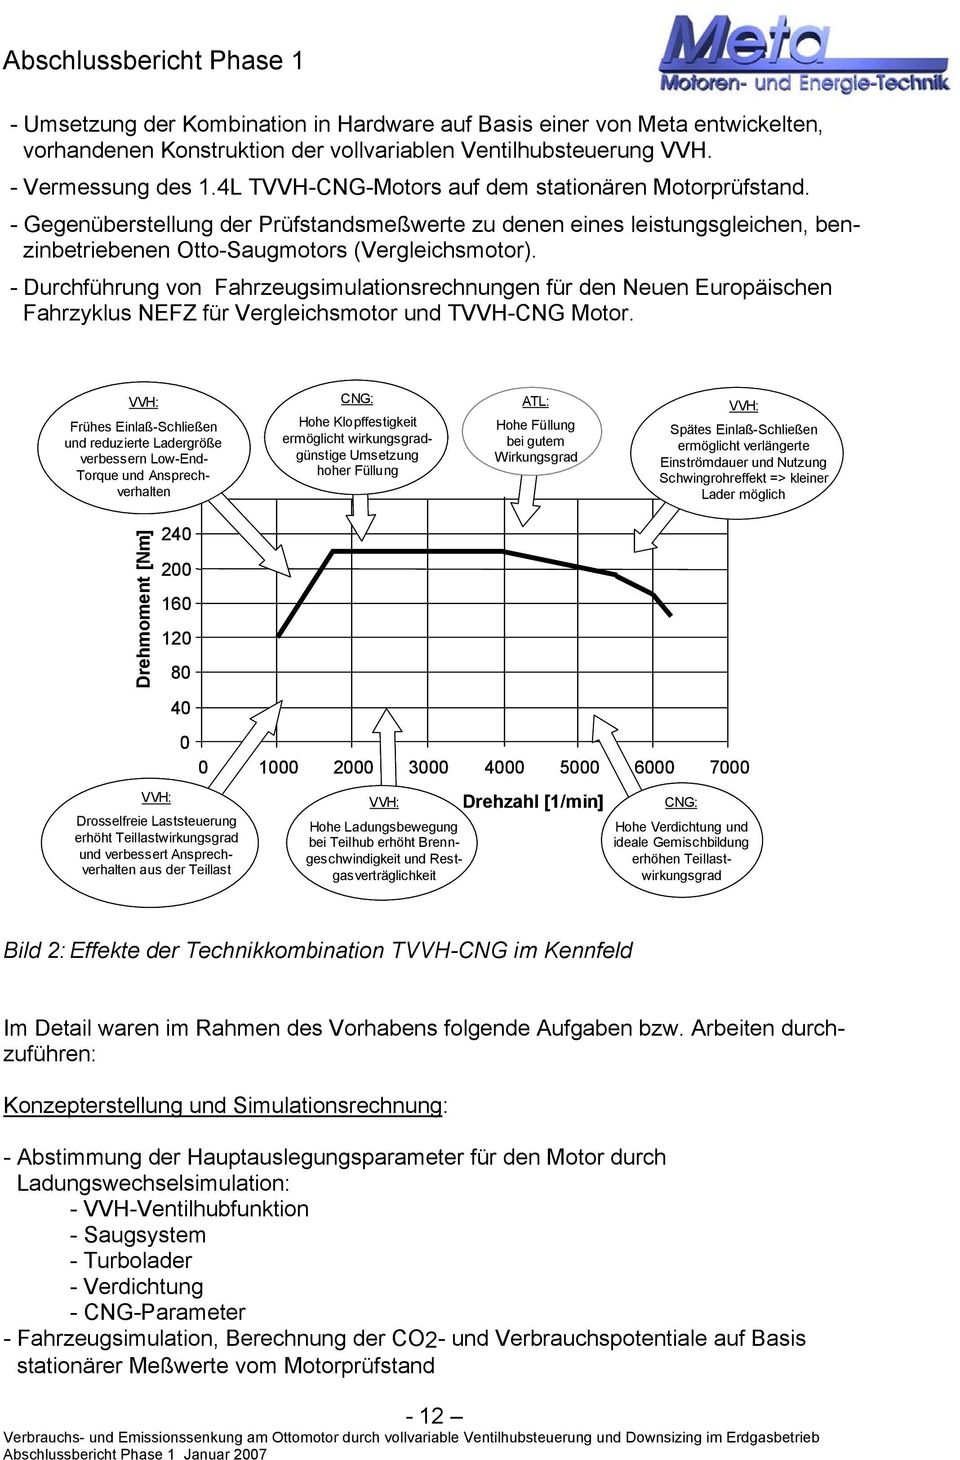 - Durchführung von Fahrzeugsimulationsrechnungen für den Neuen Europäischen Fahrzyklus NEFZ für Vergleichsmotor und TVVH-CNG Motor.